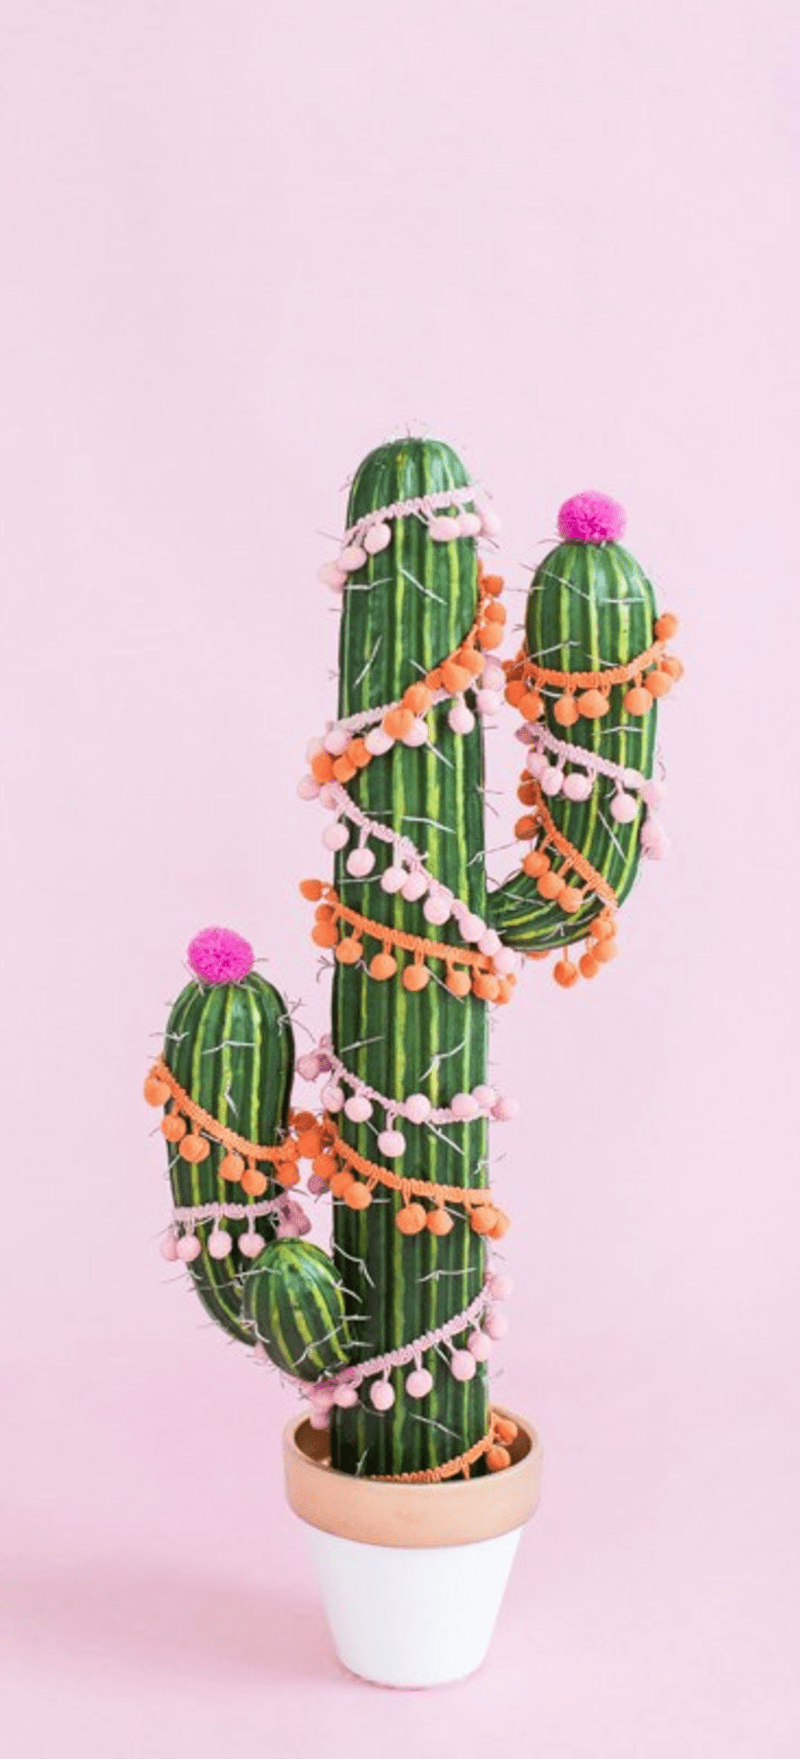 Pořídit si můžete i keramický kaktus.